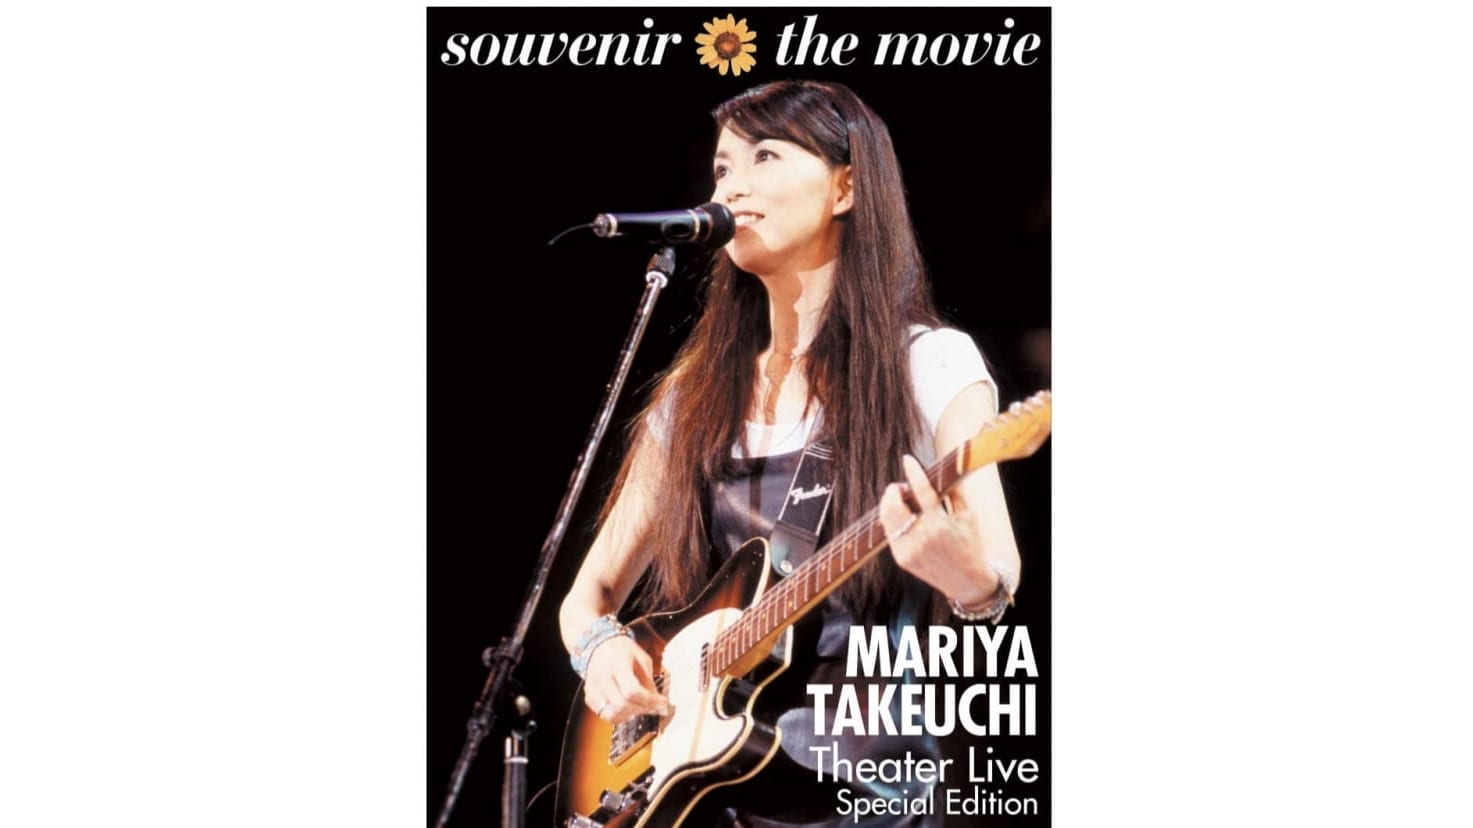 竹内まりやBlu-ray & DVD『souvenir the movie 〜MARIYA TAKEUCHI Theater Live〜』